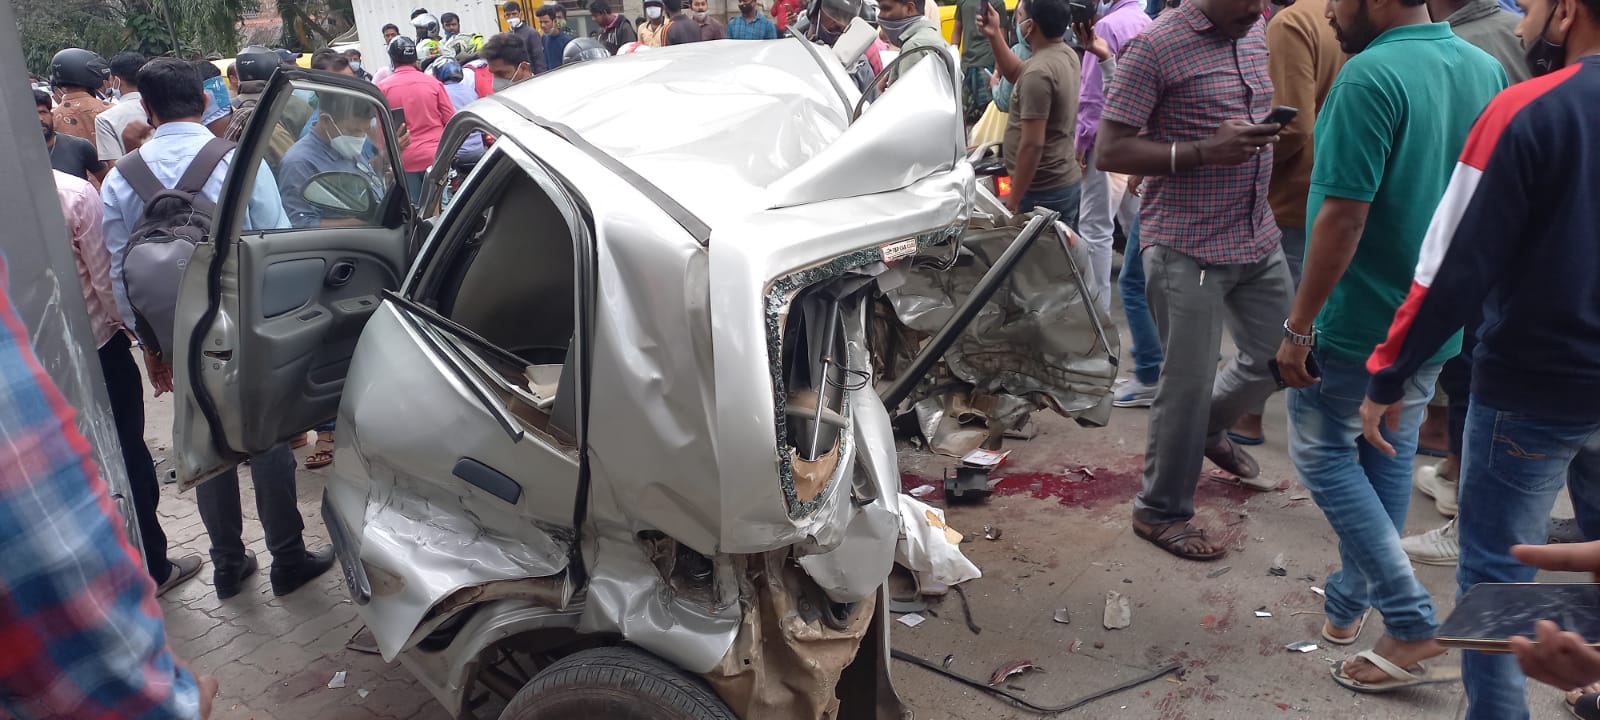 ಬೆಂಗಳೂರಲ್ಲಿ ಸರಣಿ ವಾಹನ ಅಪಘಾತ, Serial Accident in Bengaluru